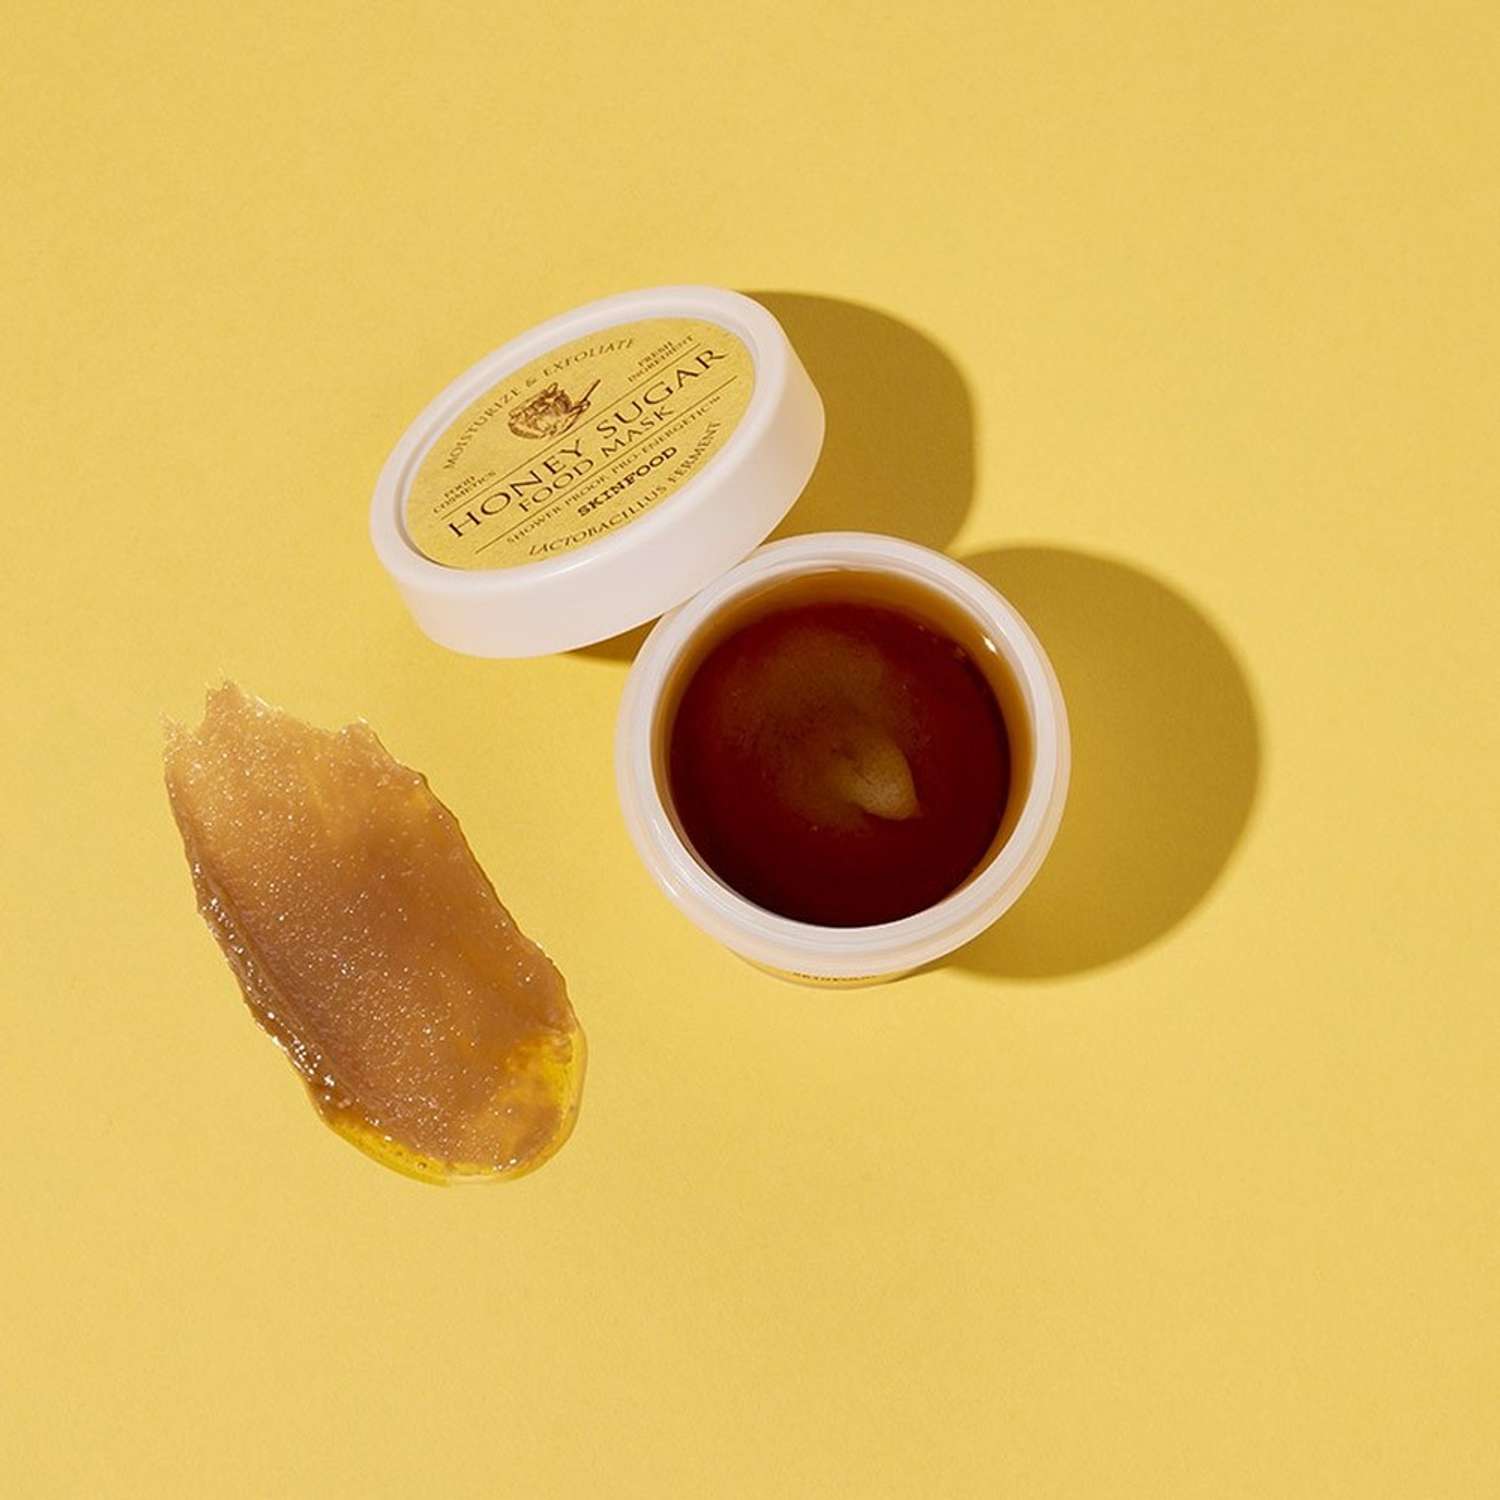 Маска для лица Skinfood Food mask медово-сахарная увлажняющая и отшелушивающая 120 г - фото 8